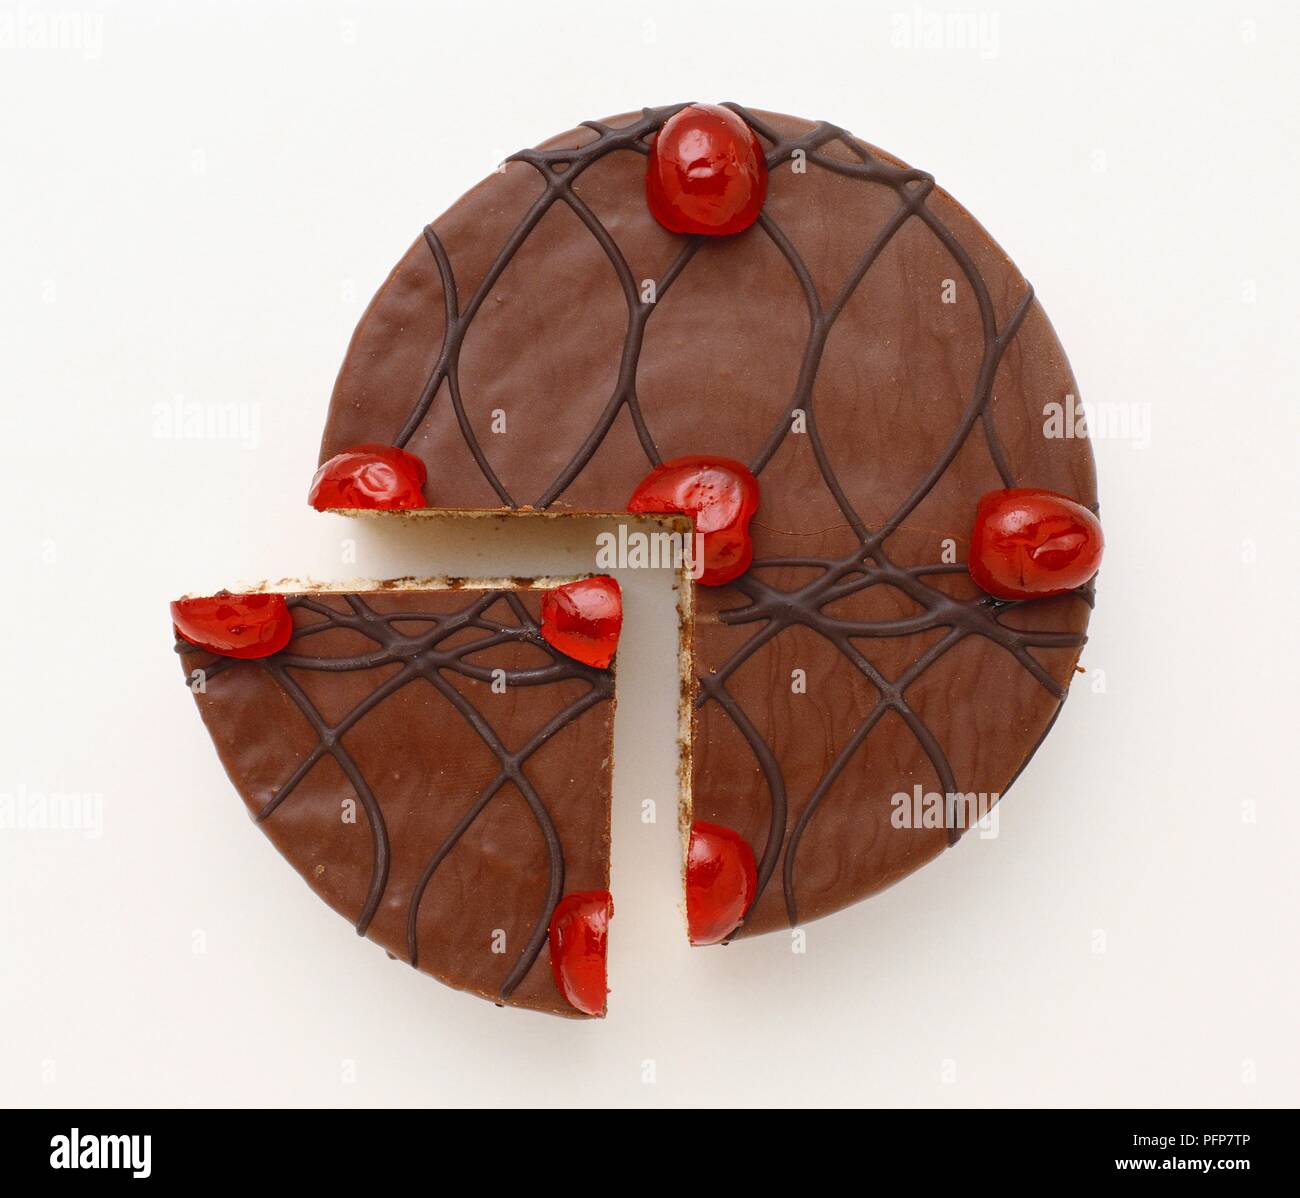 Schokolade Kuchen und Slice gekrönt mit Muster und roten Kirschen Stockfoto